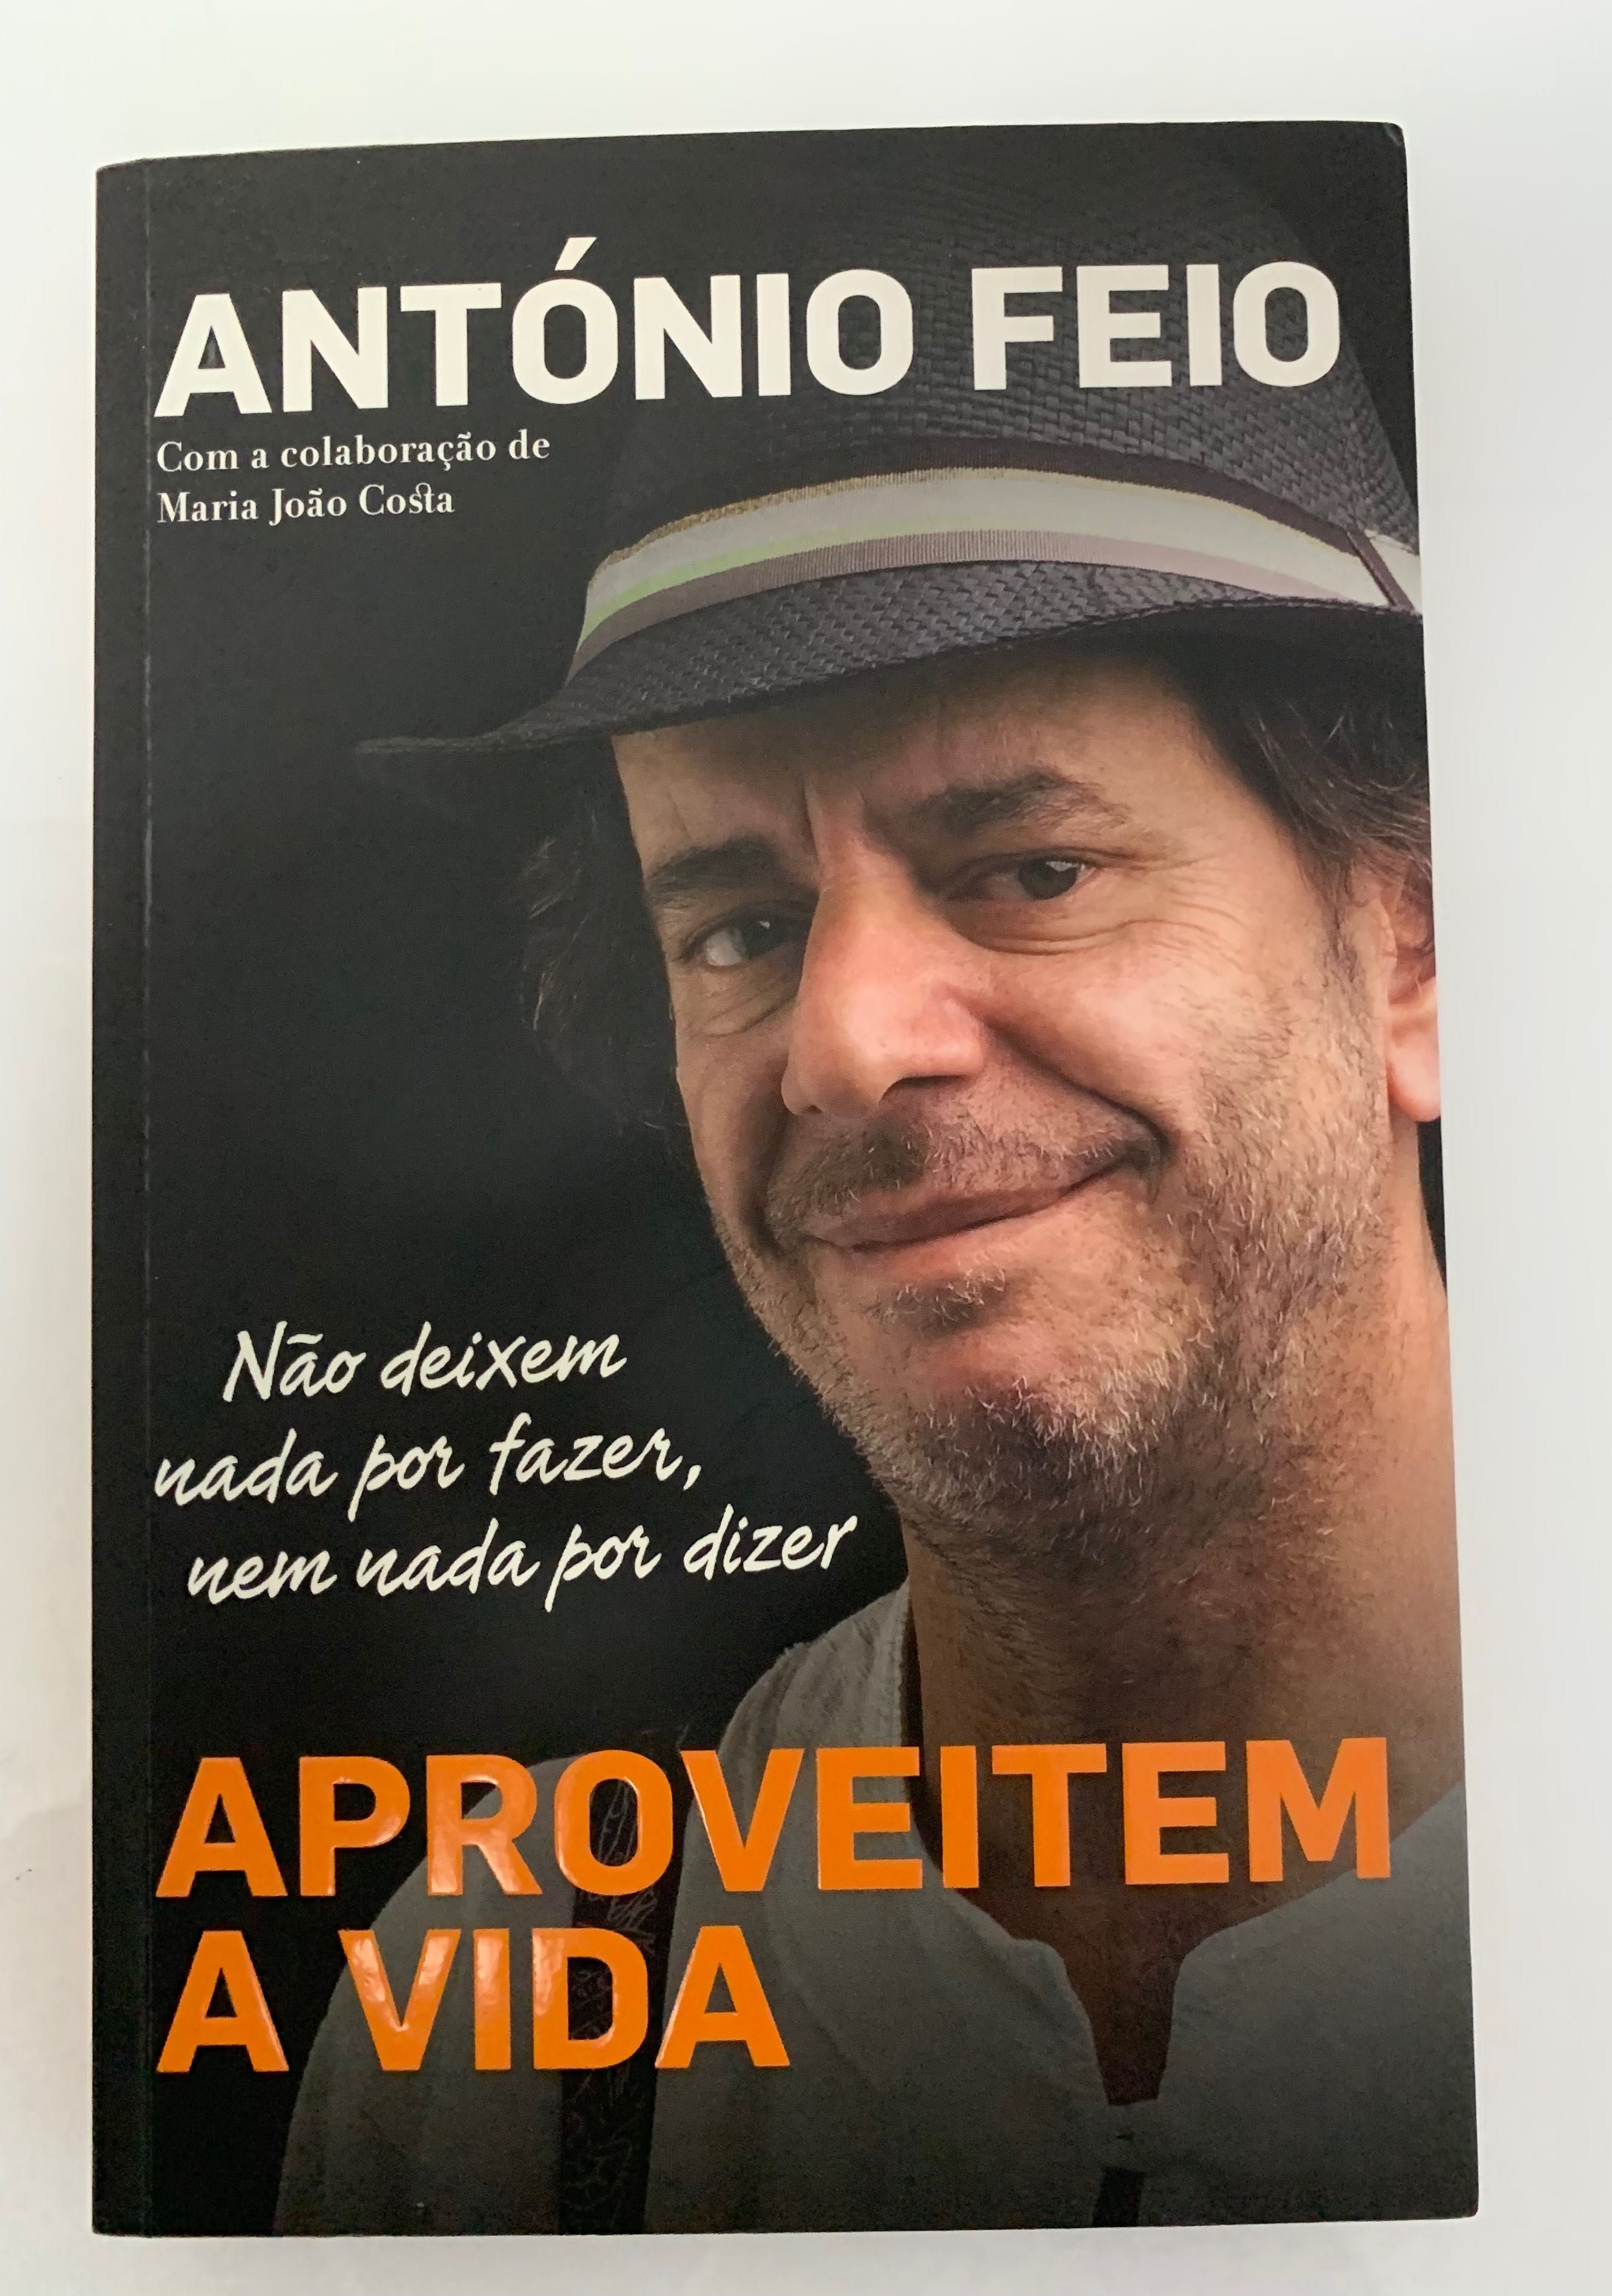 Livro “Aproveitem a vida” - António Feio